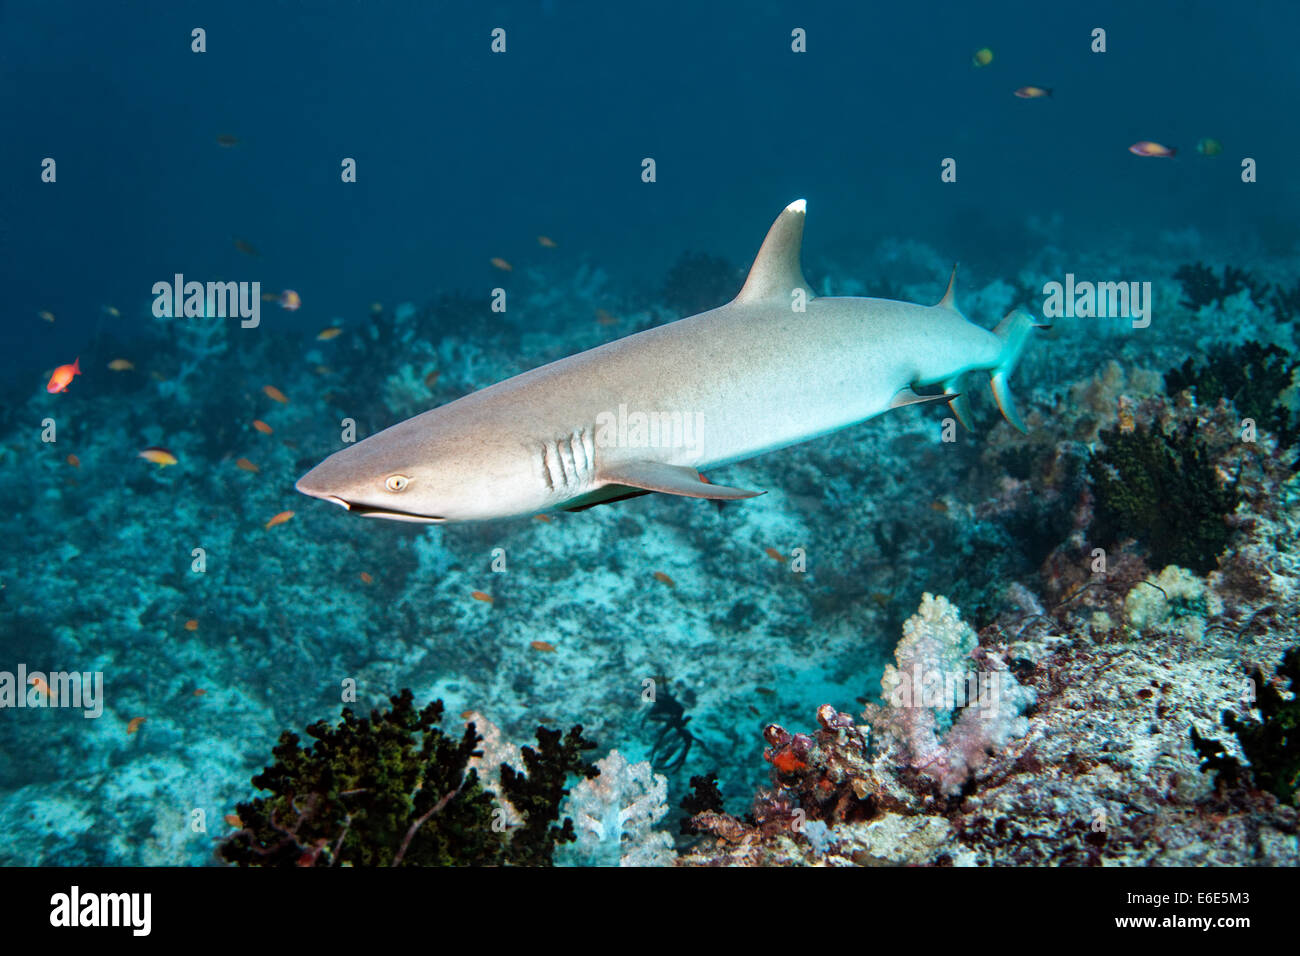 Whitetip reef shark (Triaenodon obesus) sur les récifs coralliens, Embudu channel, de l'Océan Indien, Tilla, South Male Atoll, Maldives Banque D'Images